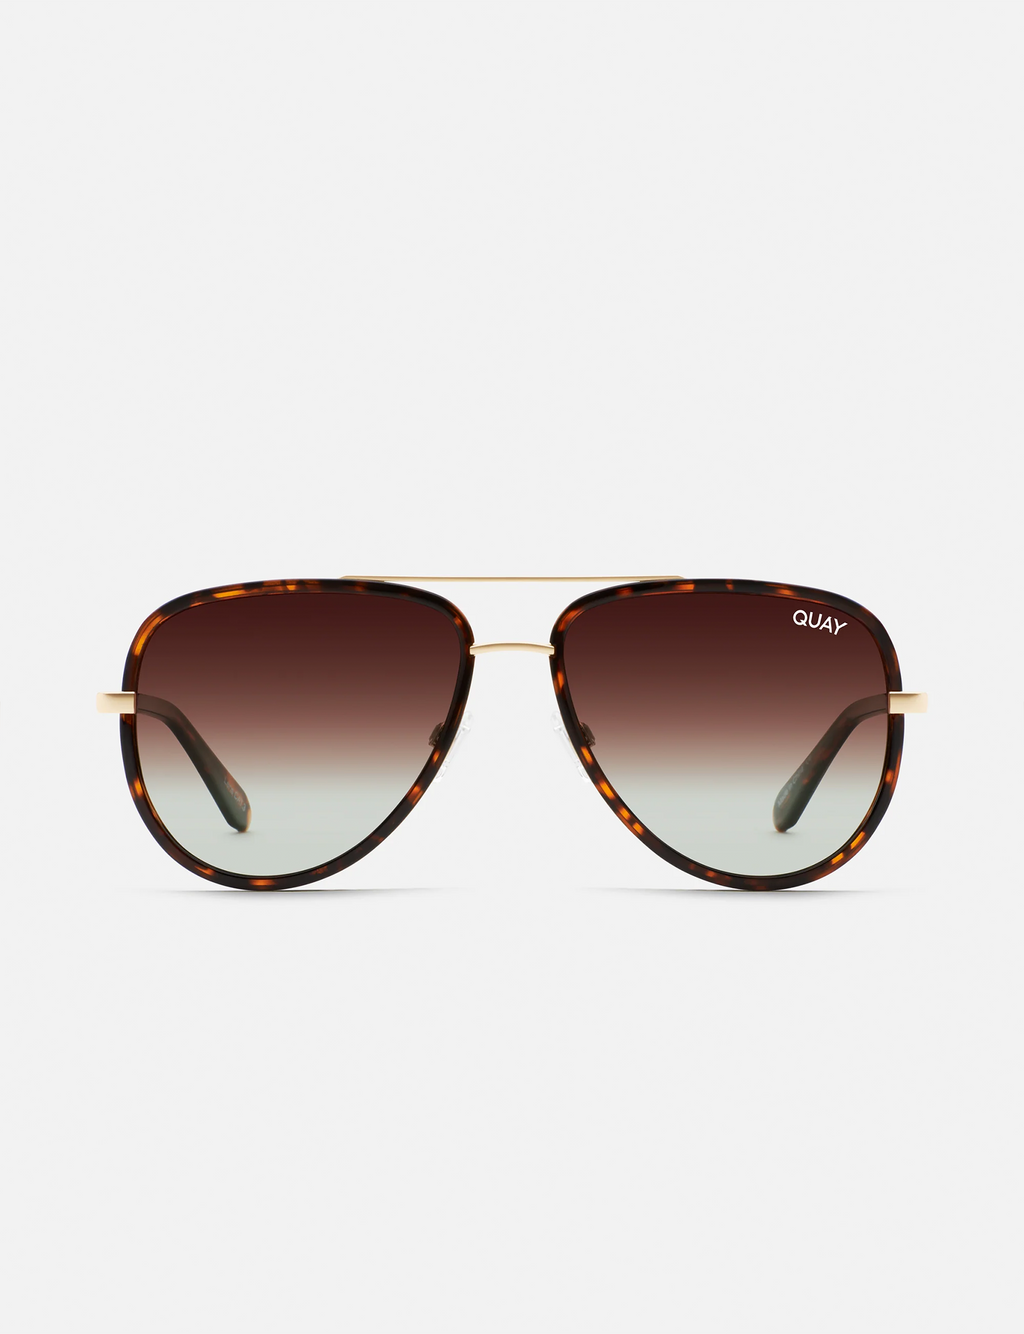 All In Mini Polarized Sunglasses, Tort/Brown Fade